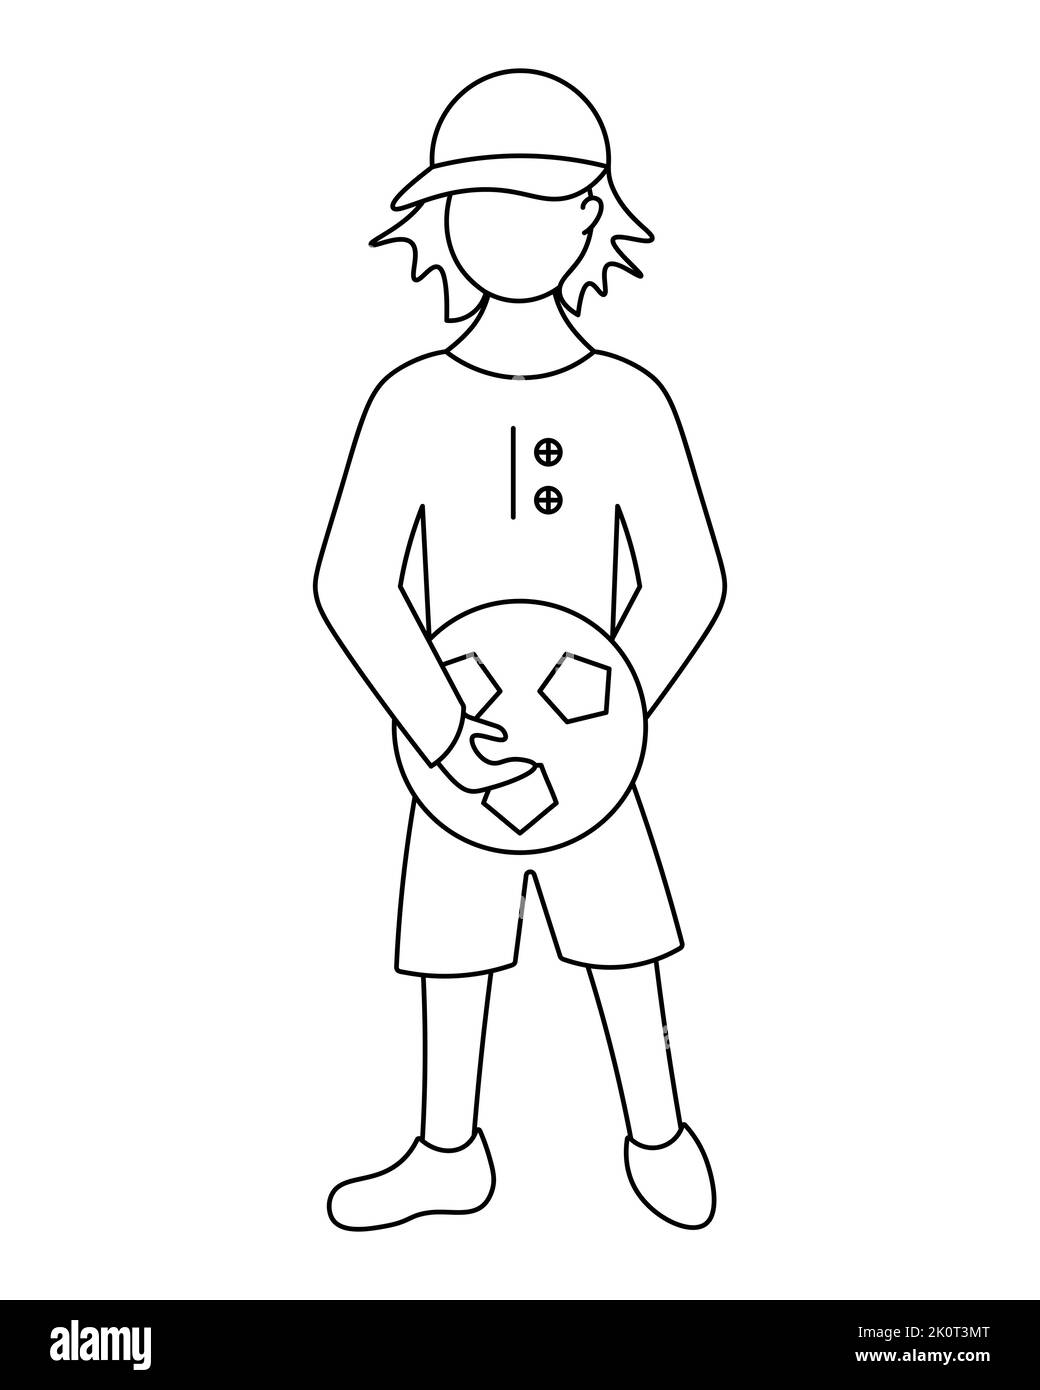 L'étudiant tient une balle de football entre ses mains. Esquisse. Un garçon dans une casquette et un uniforme sportif à une leçon d'éducation physique. Illustration vectorielle. Illustration de Vecteur